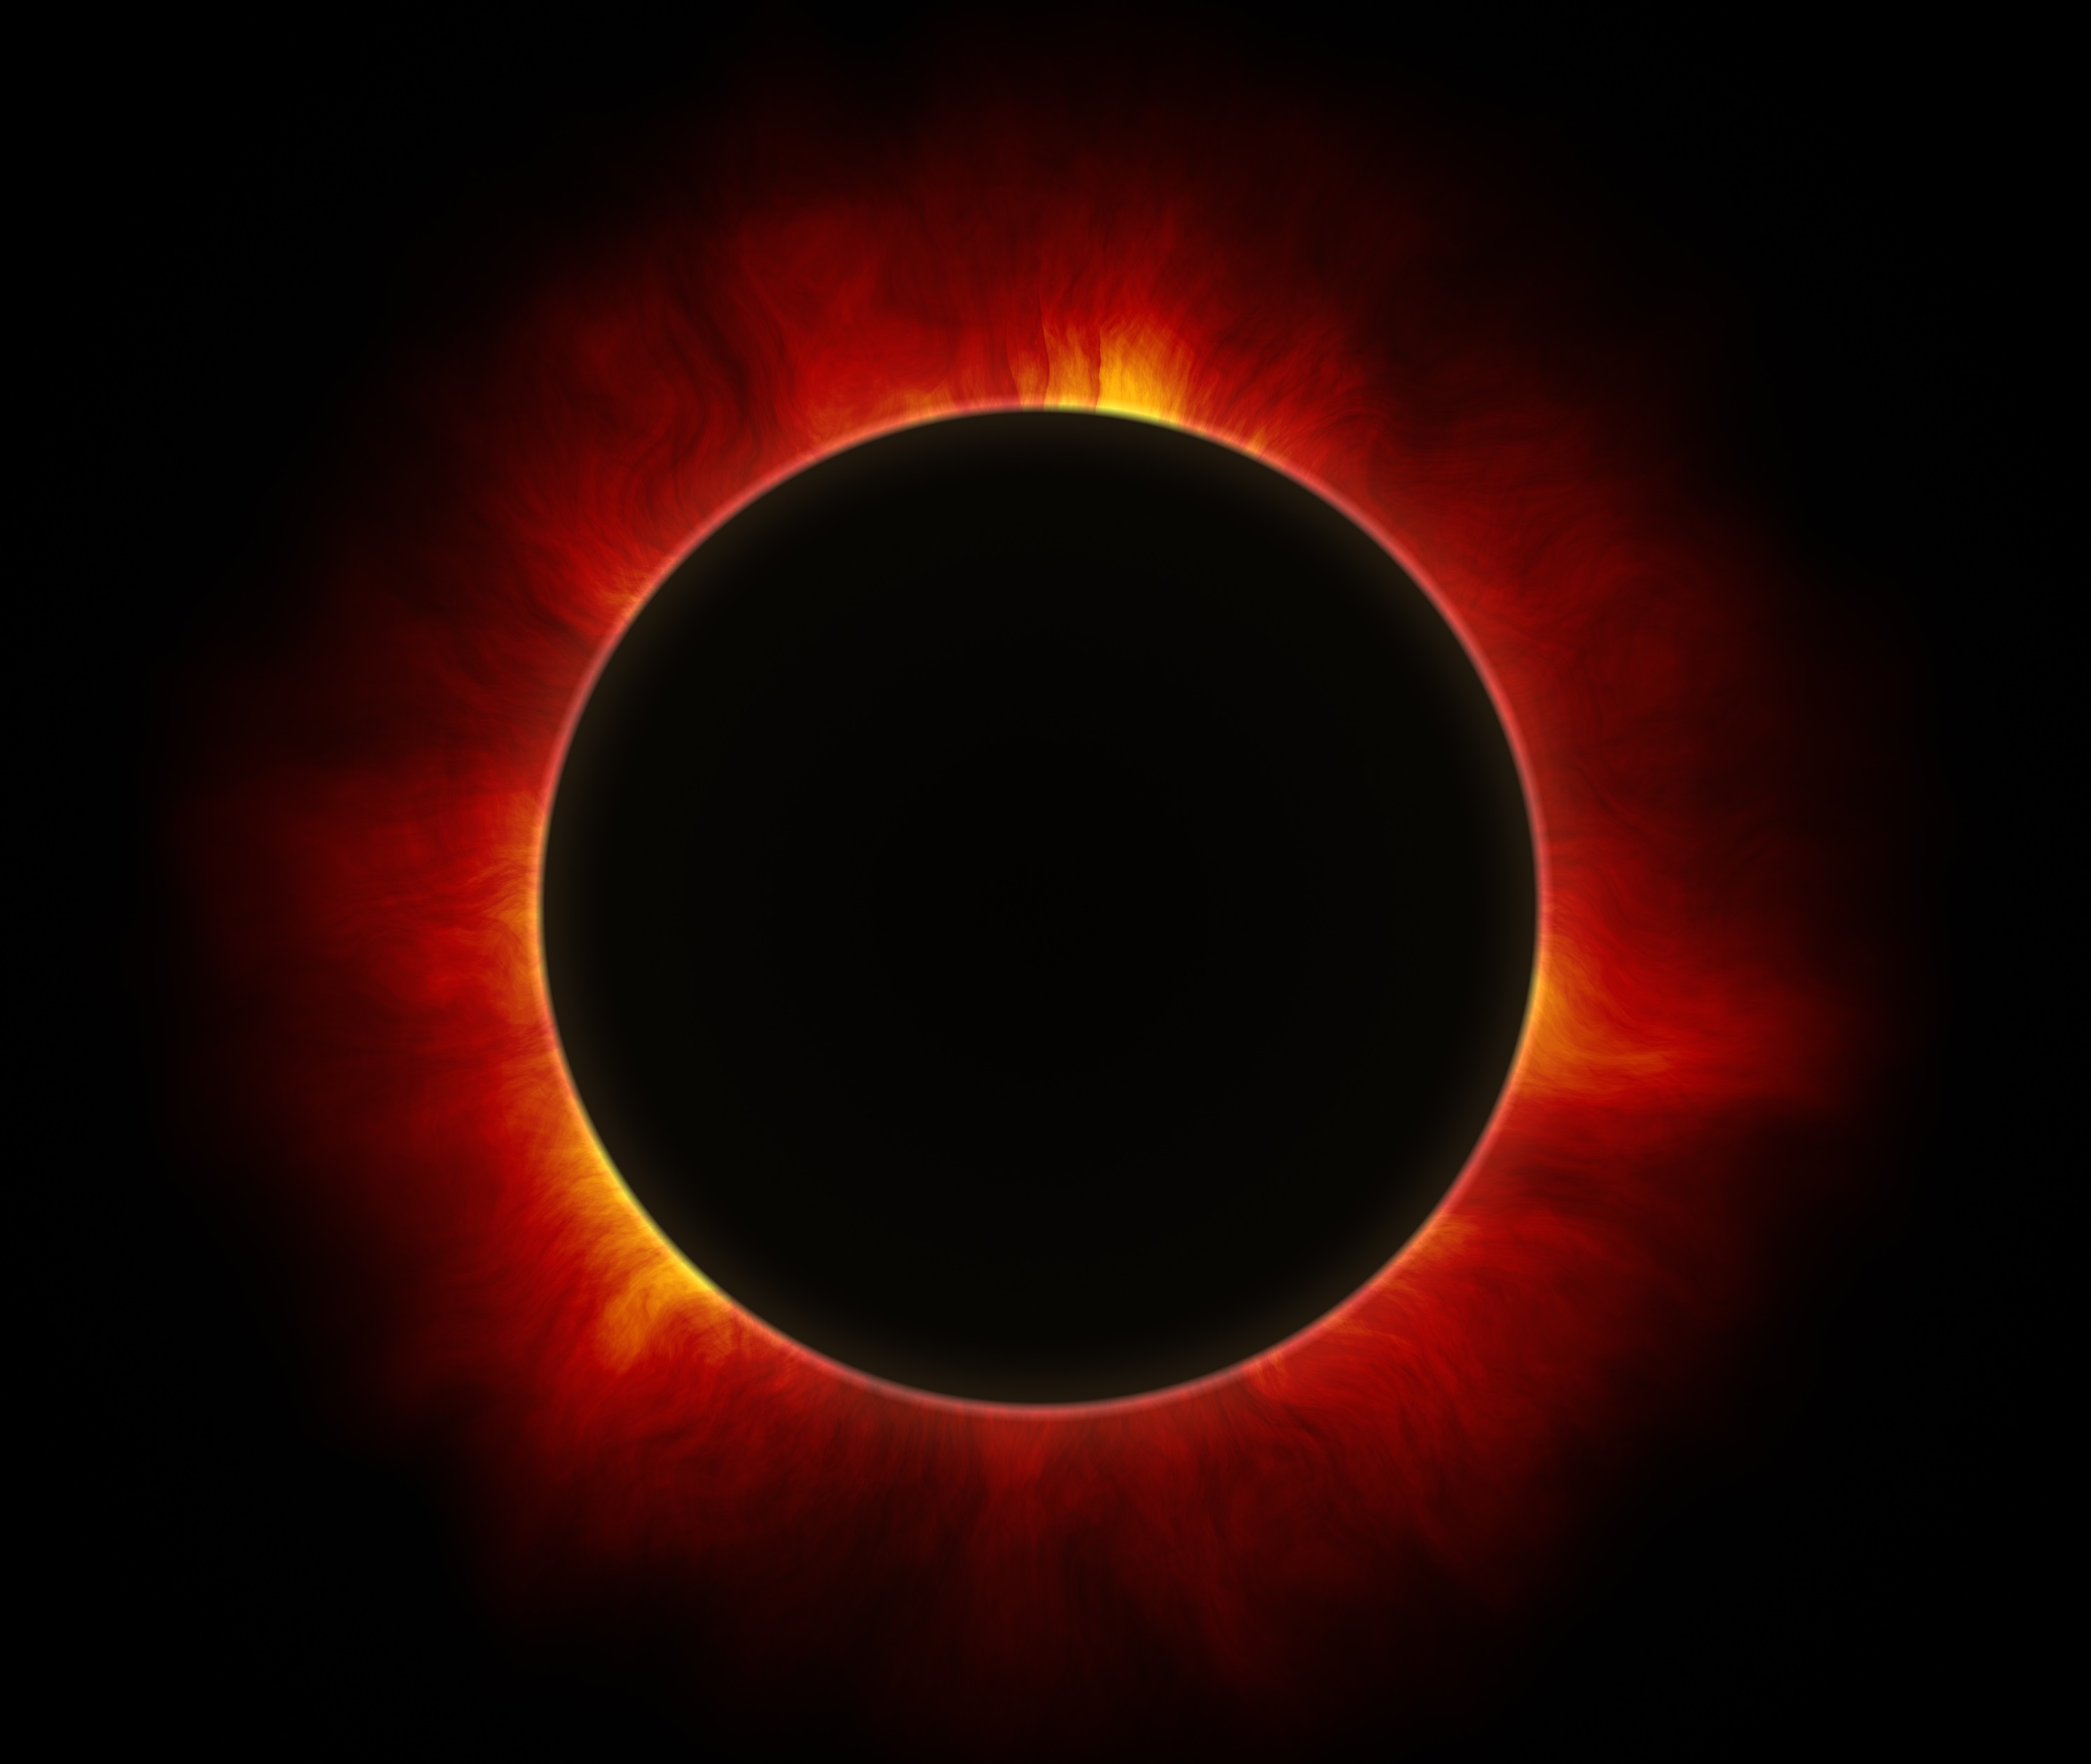 Le "Ring of Fire" est le point culminant de l'éclipse.